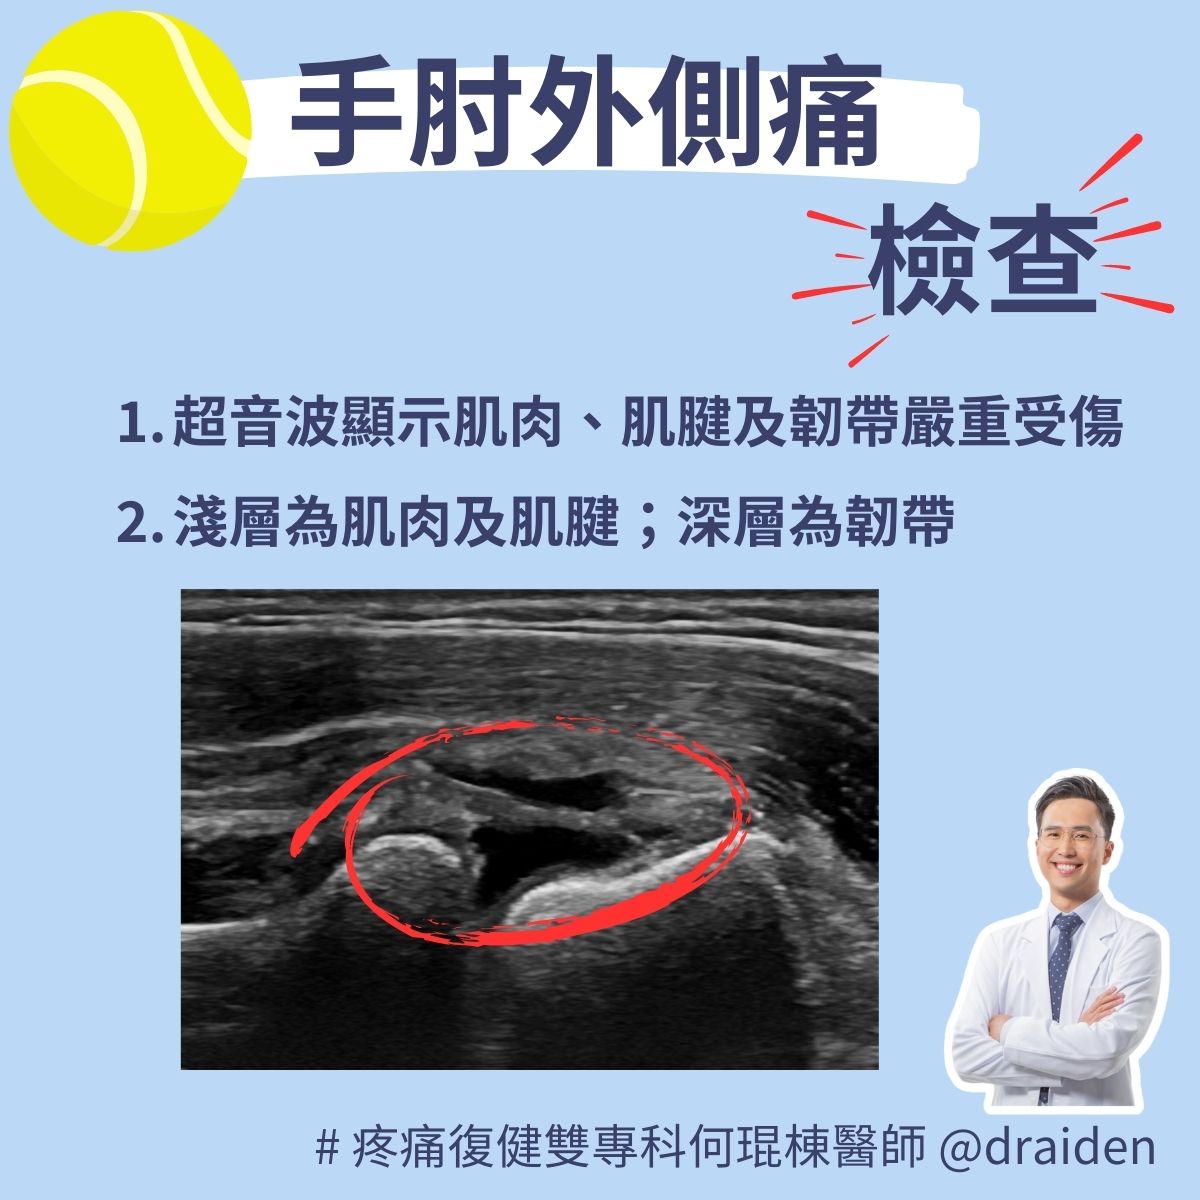 網球肘超音波檢查發現：嚴重的肌肉、肌腱及韌帶受傷